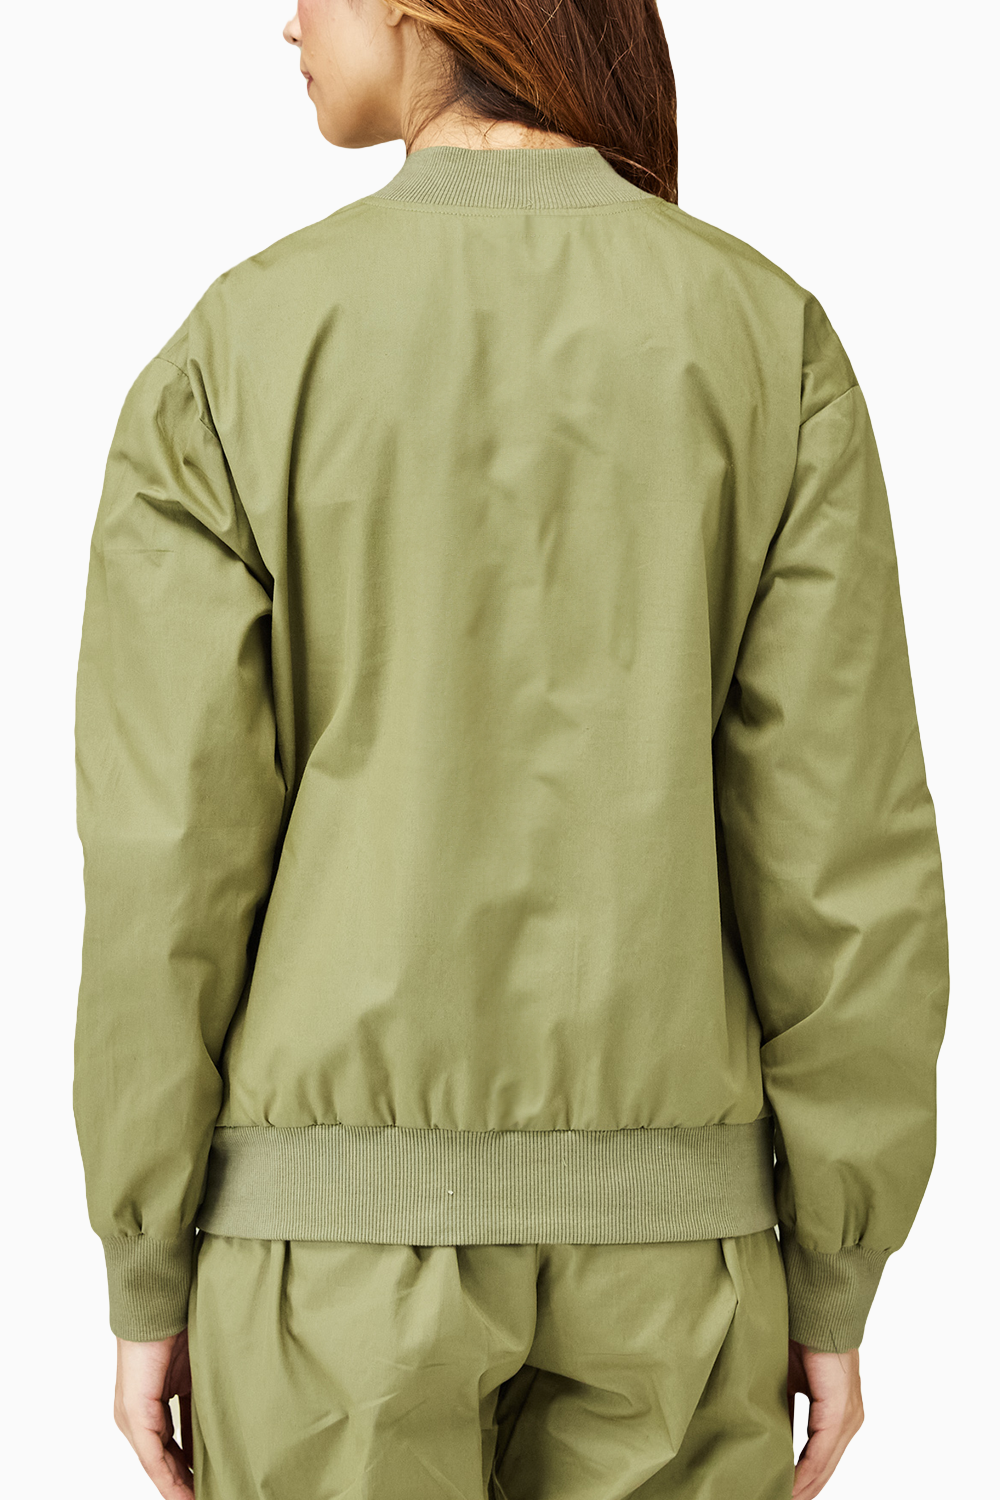 Khaki Green Everyday Jacket and Pants